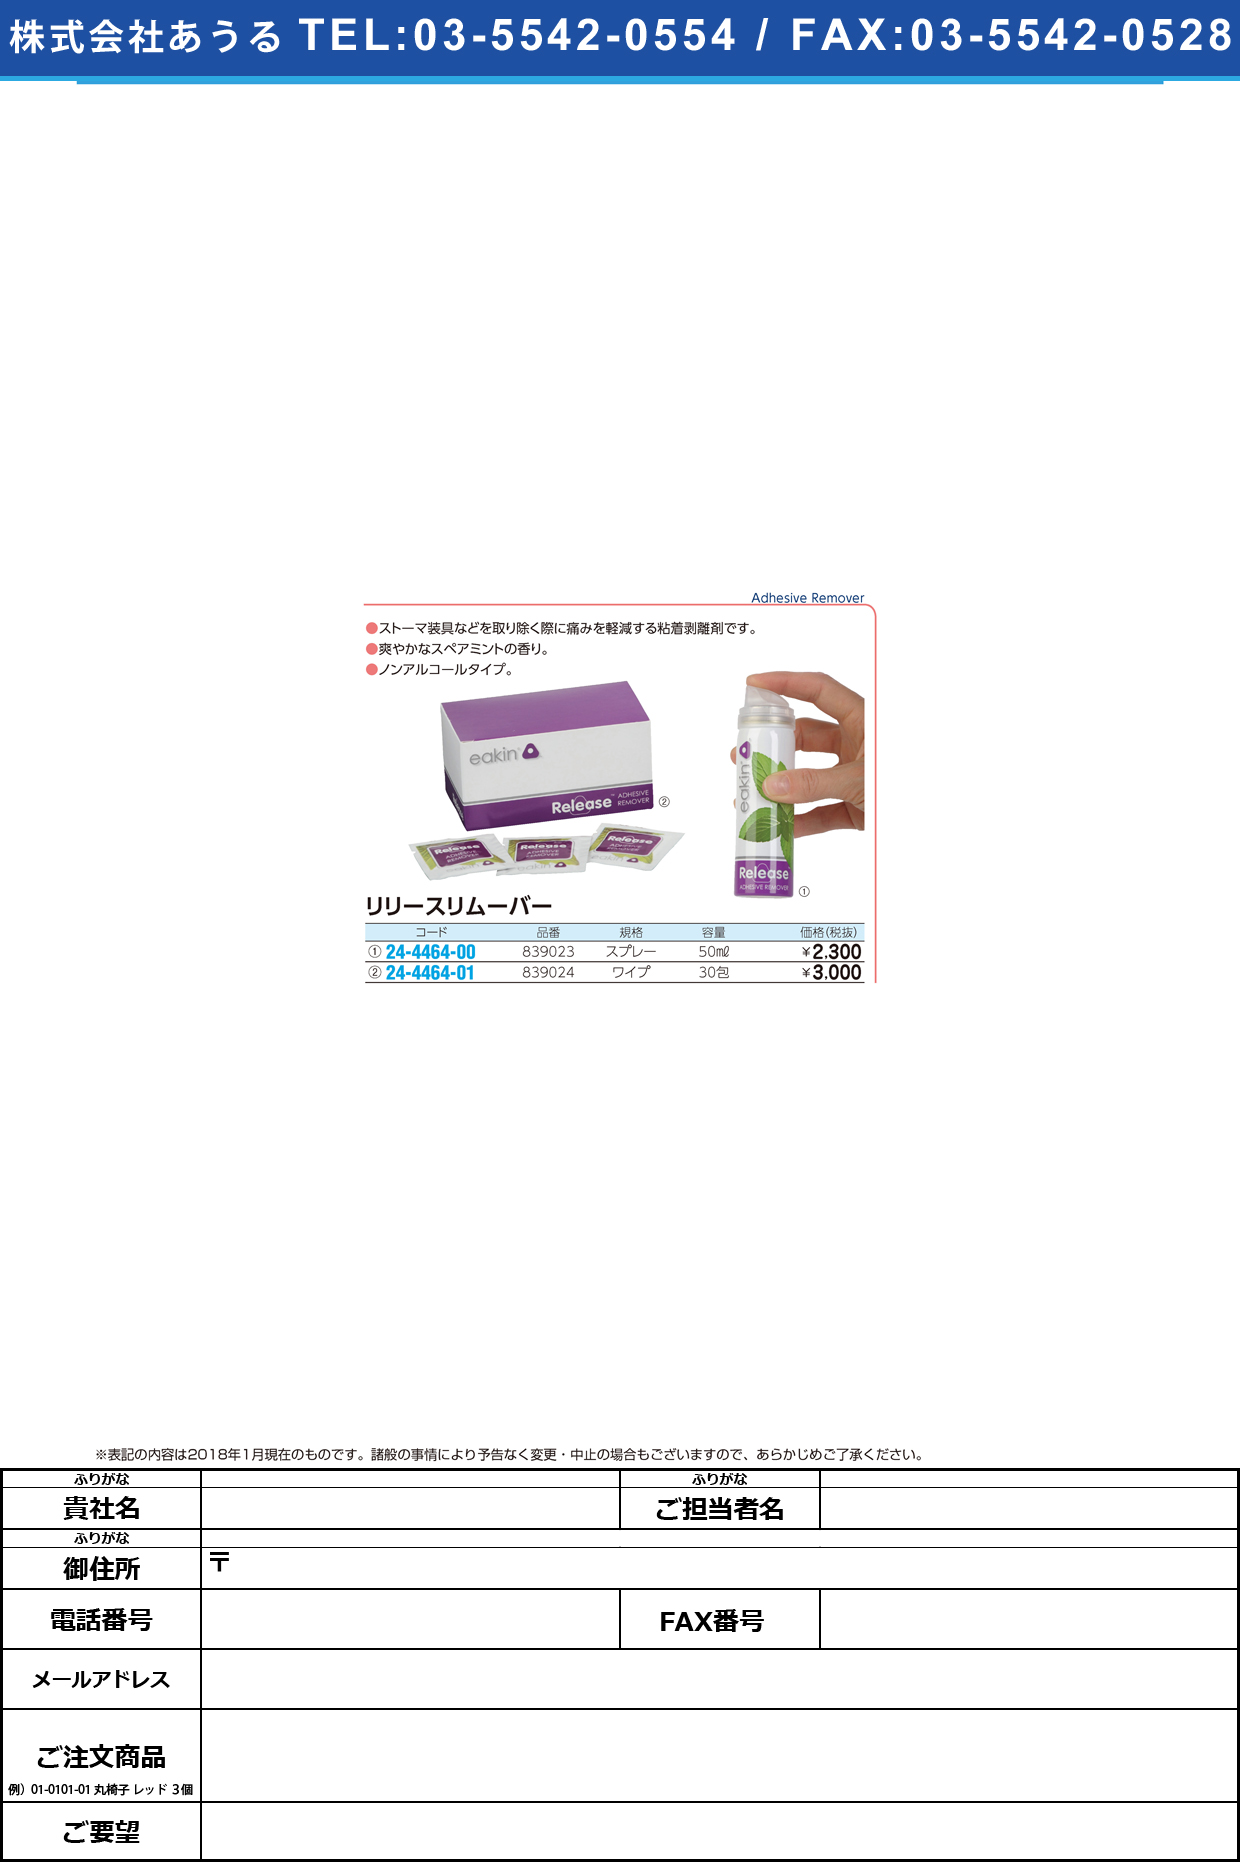 (24-4464-01)リリースリムーバー 839024(ﾜｲﾌﾟ)30ﾎｳ ﾘﾘｰｽﾘﾑｰﾊﾞｰ【1箱単位】【2018年カタログ商品】